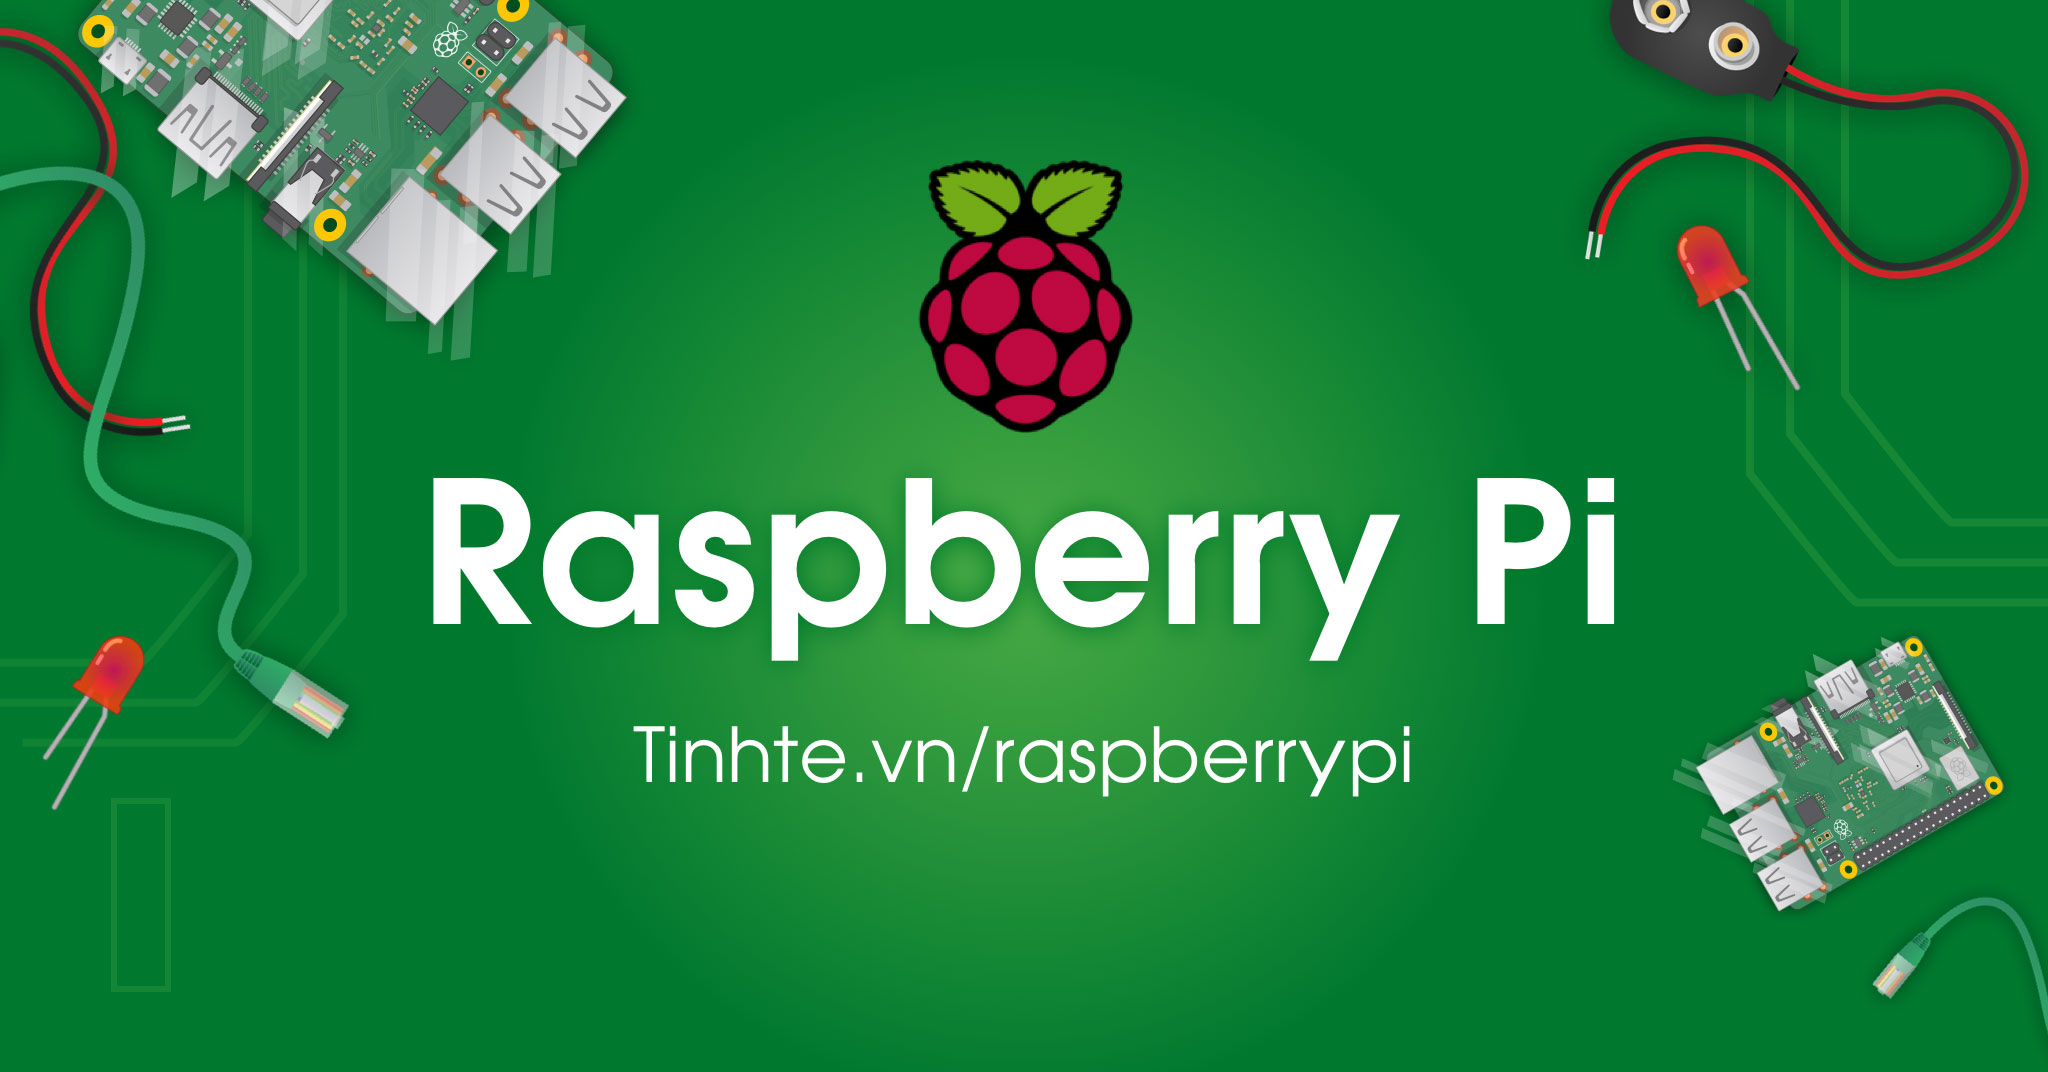 Nếu bạn đang muốn tìm một thiết bị đơn giản để phát triển các dự án IoT của mình, hãy nghĩ đến Raspberry Pi. Với những tính năng thông minh, chi phí thấp và khả năng tùy biến cao, Raspberry Pi là một lựa chọn tuyệt vời cho các nhà phát triển và học sinh ở mọi trình độ.